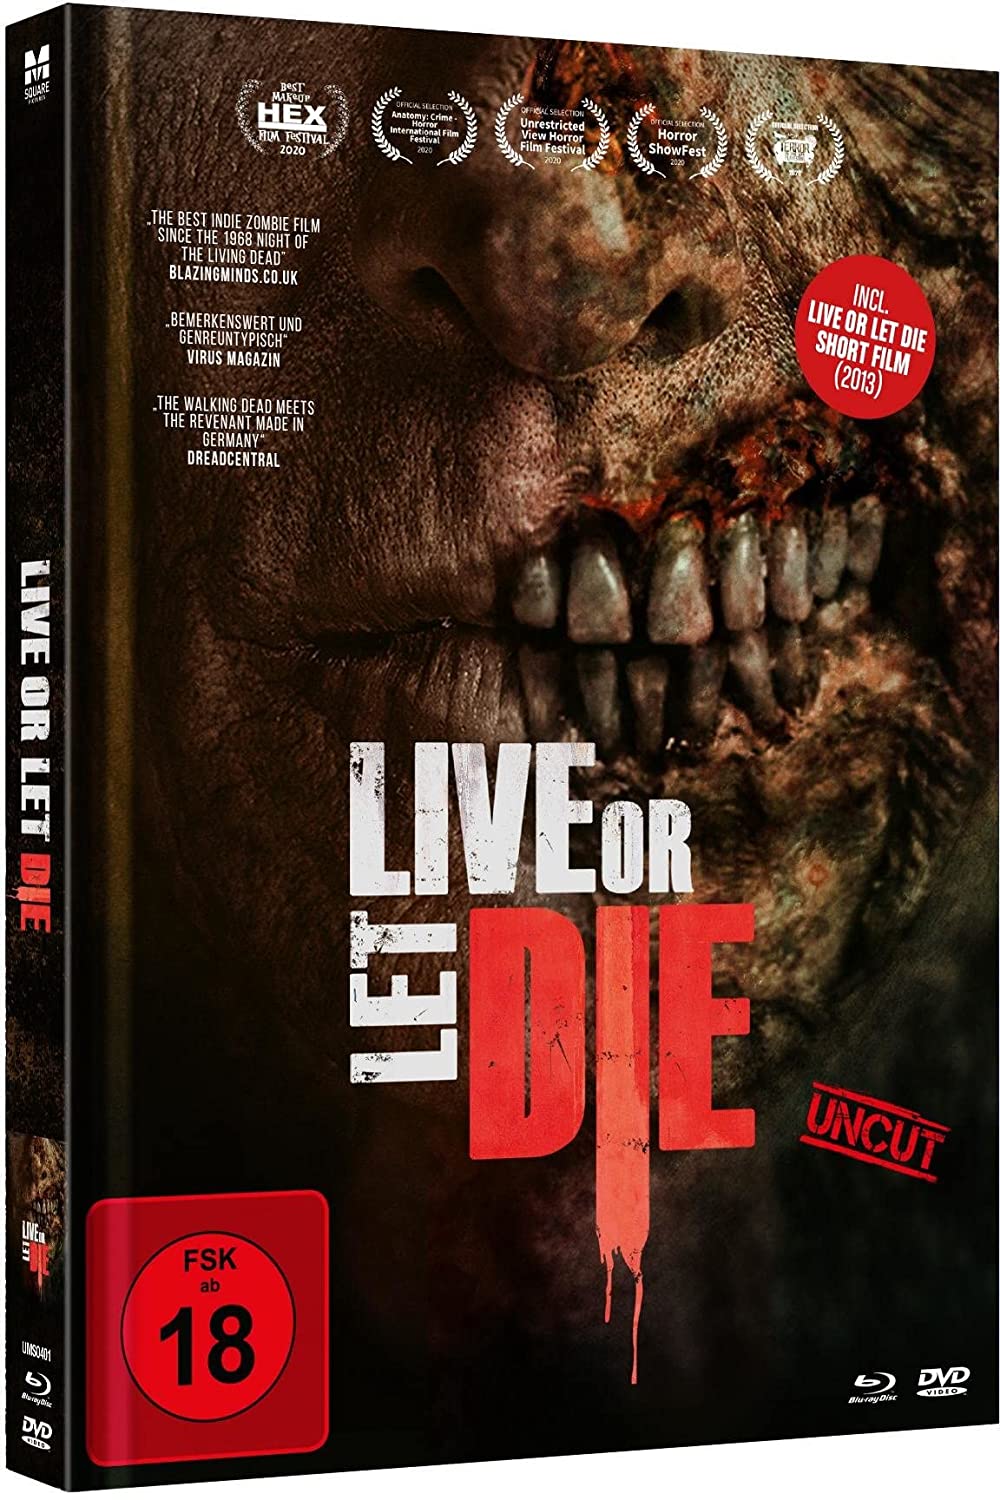 Live or let Die – Mediabook Cover